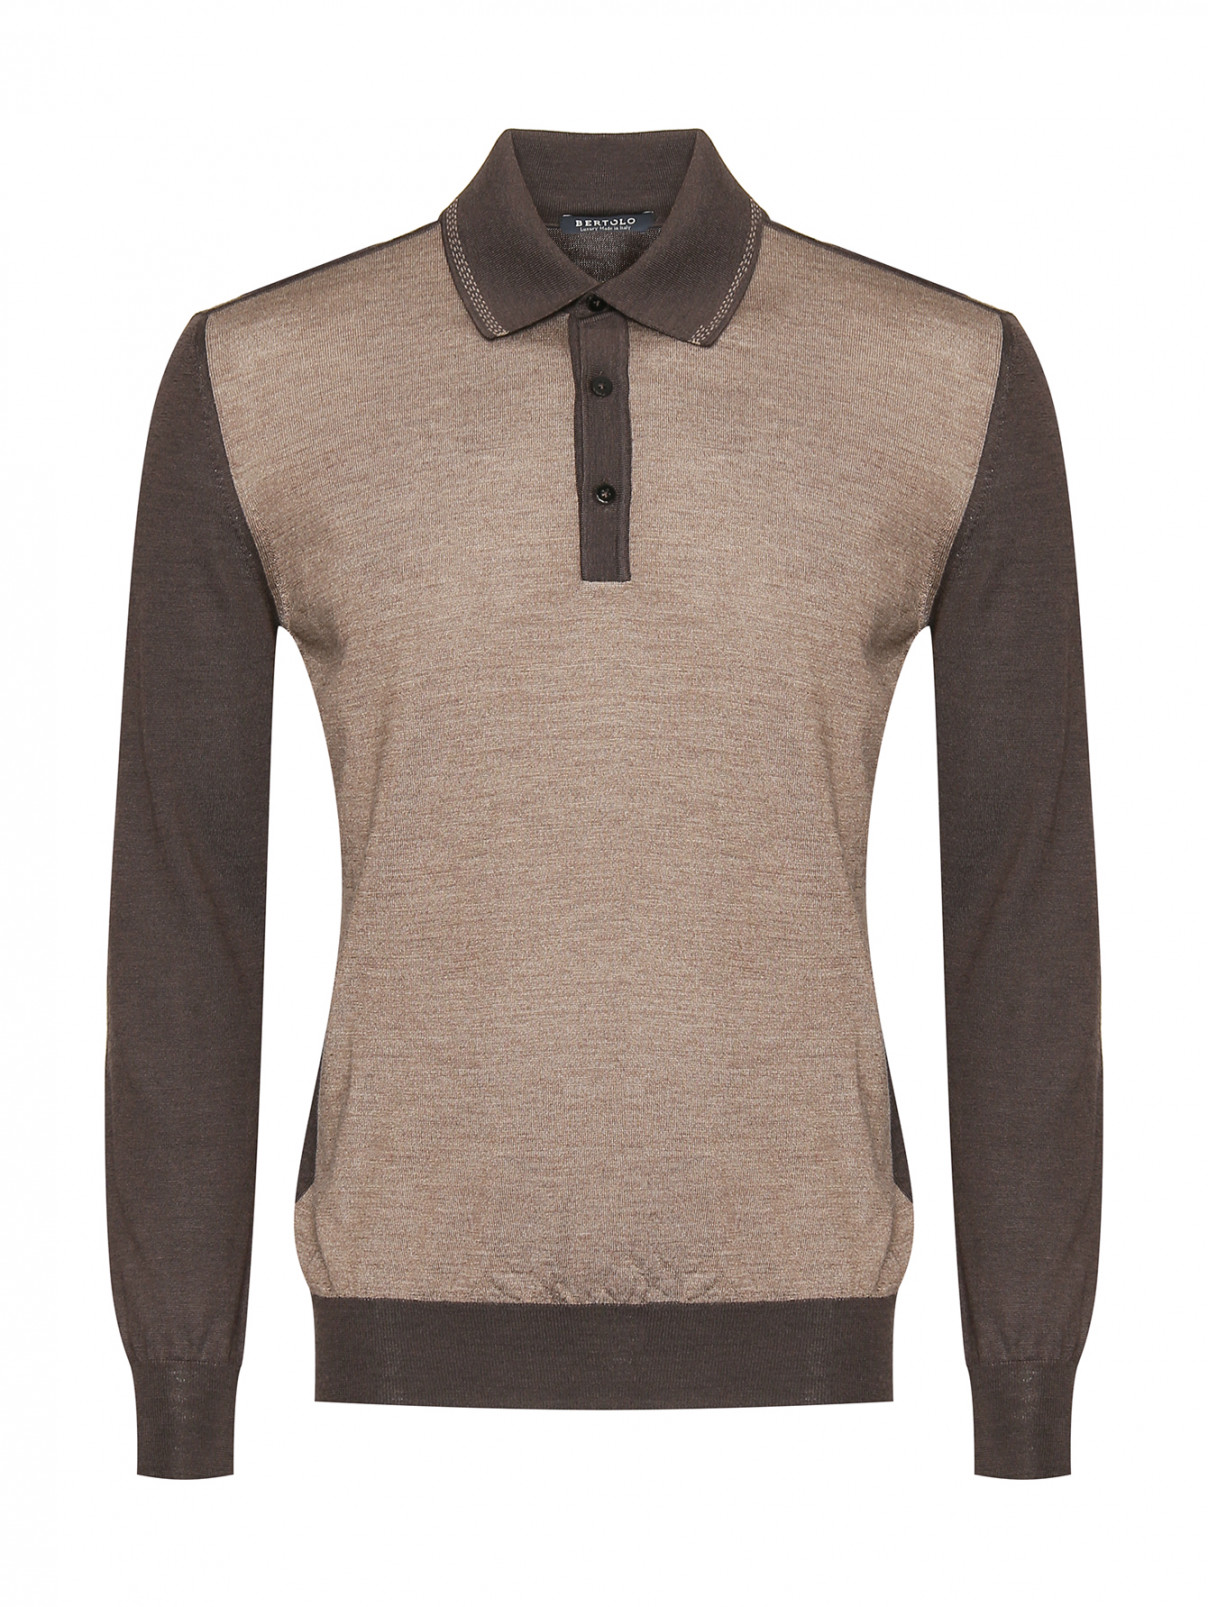 Пуловер с воротником-поло Bertolo  –  Общий вид  – Цвет:  Коричневый